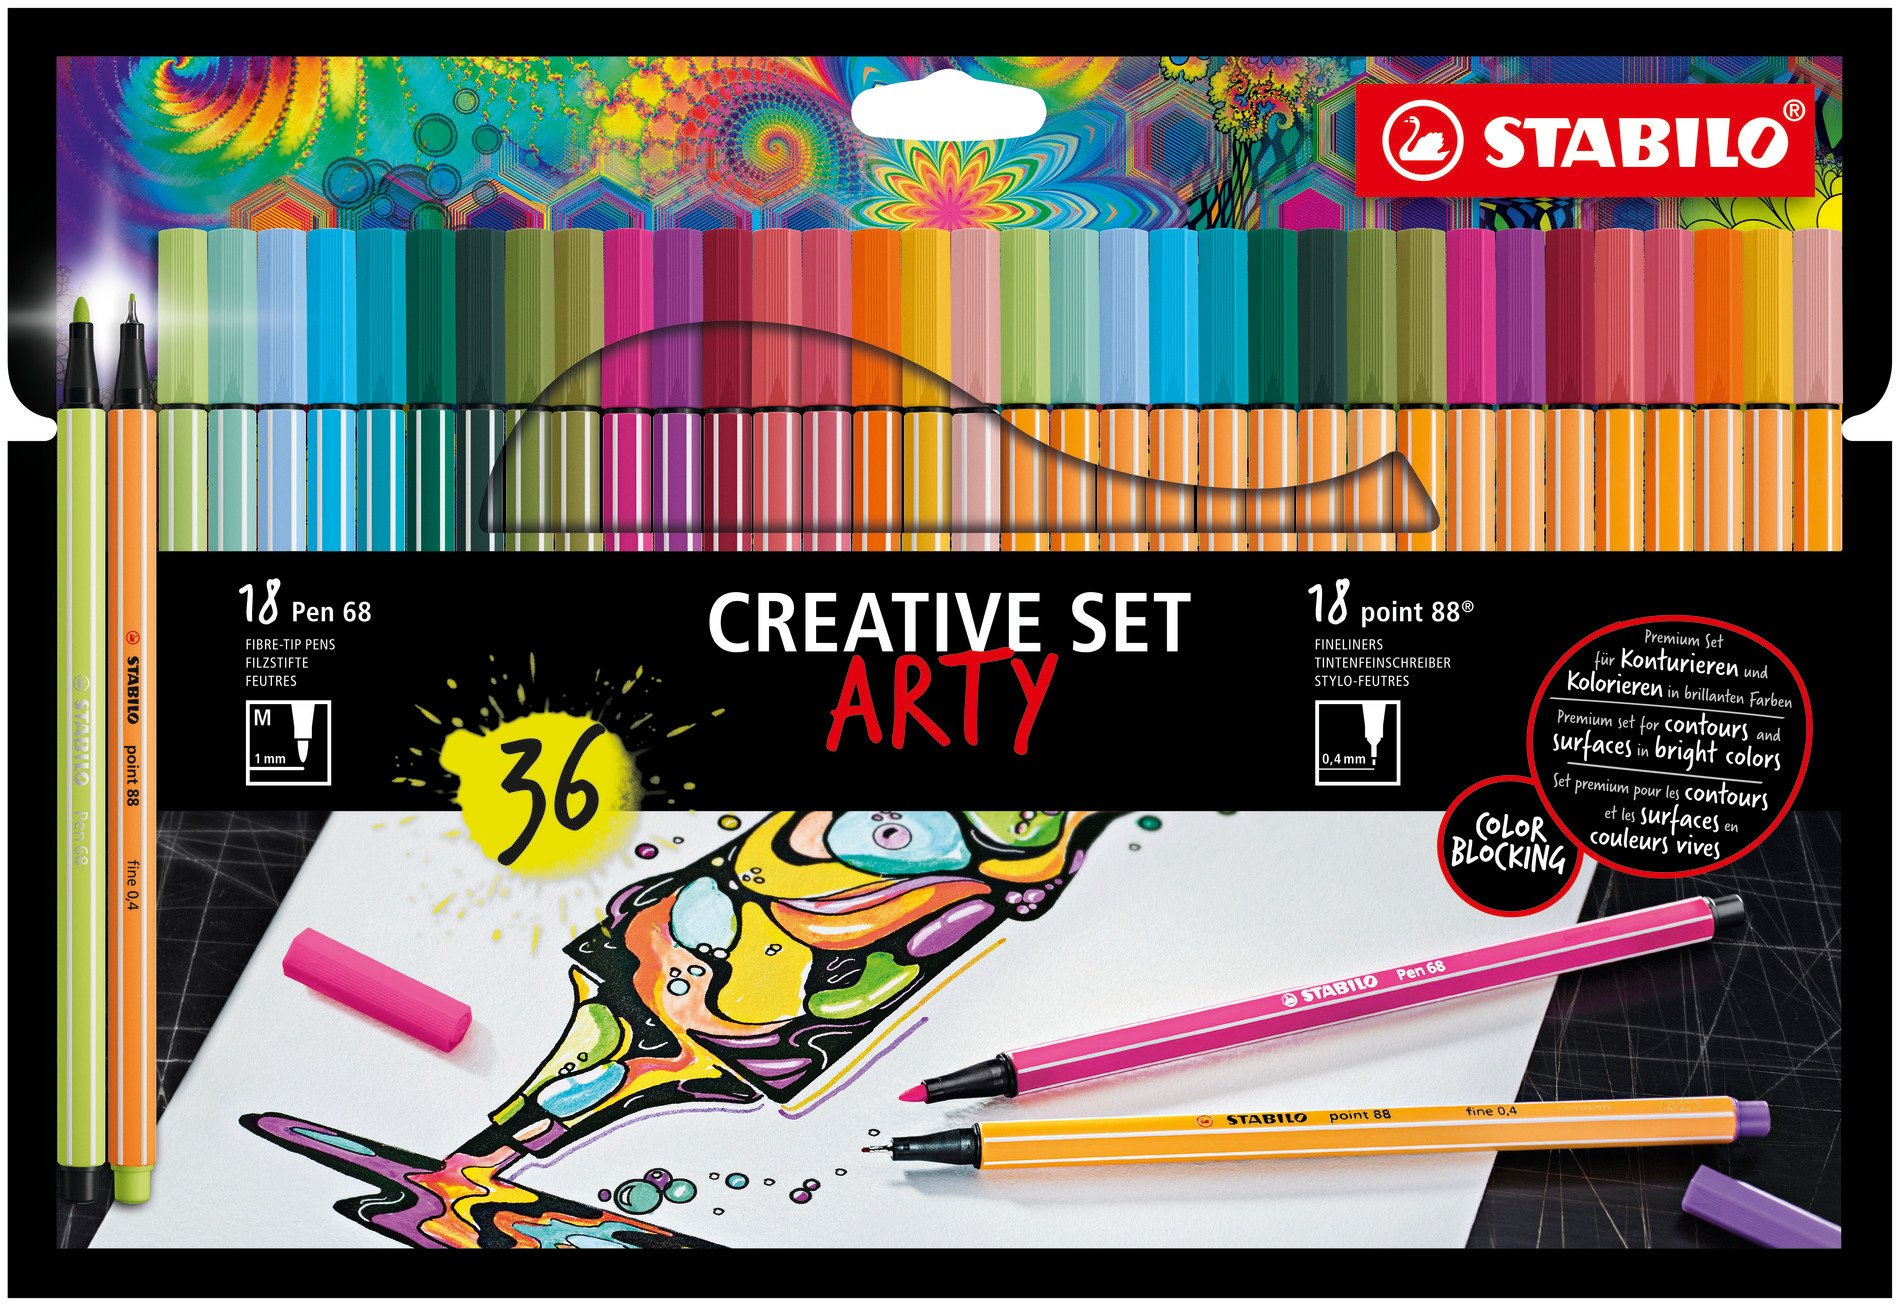 Premium Filzstift STABILO Pen 68 und Fineliner STABILO point 88 ARTY Creative Set